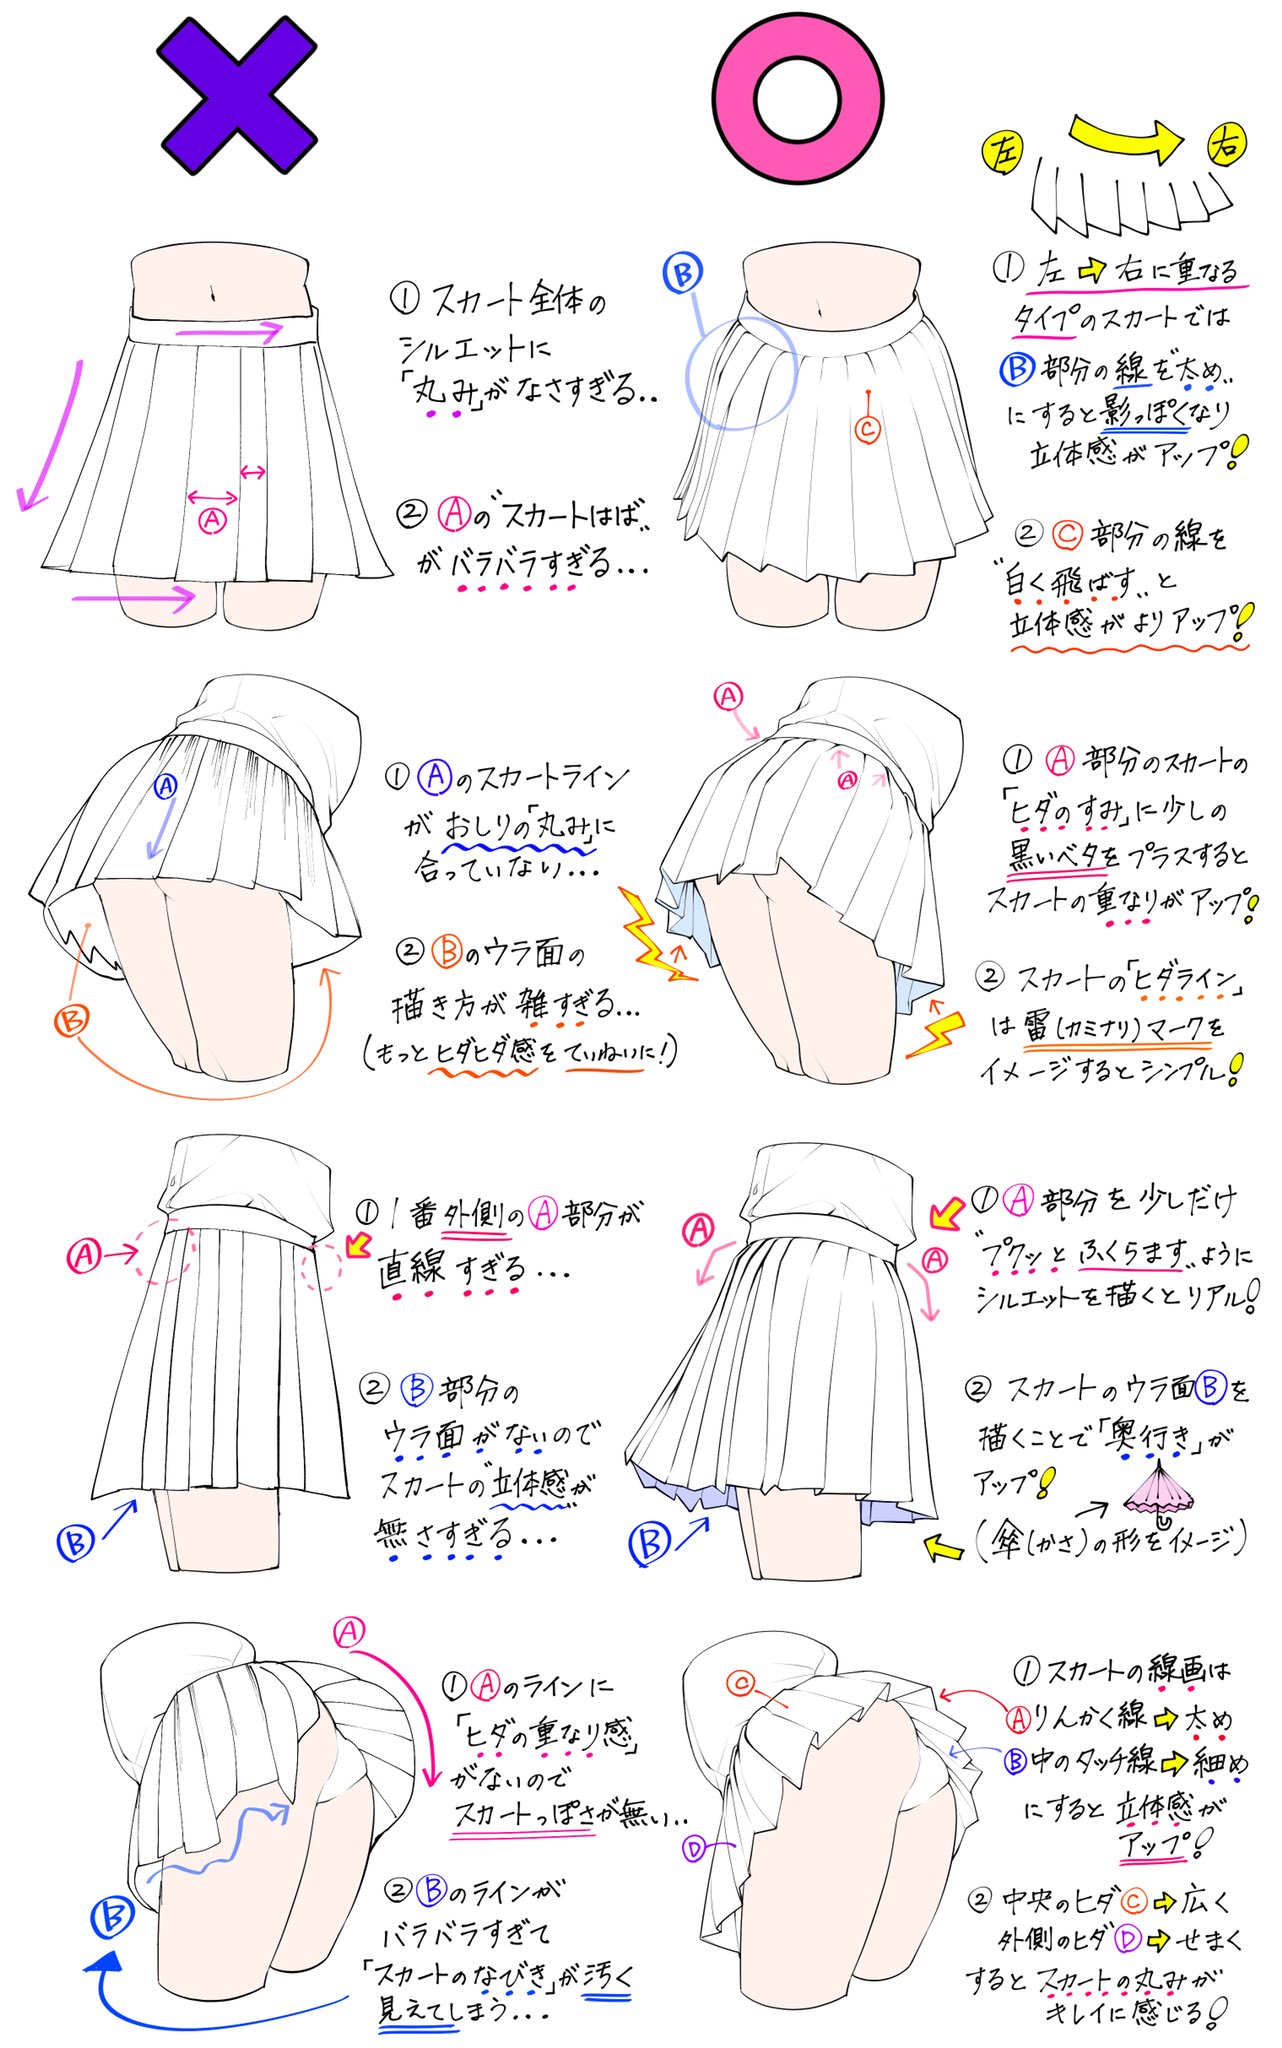 吉村拓也 イラスト講座 スカートの描き方 が 上達するための ダメなこと と 良いこと T Co Hpjhoi8gve Twitter